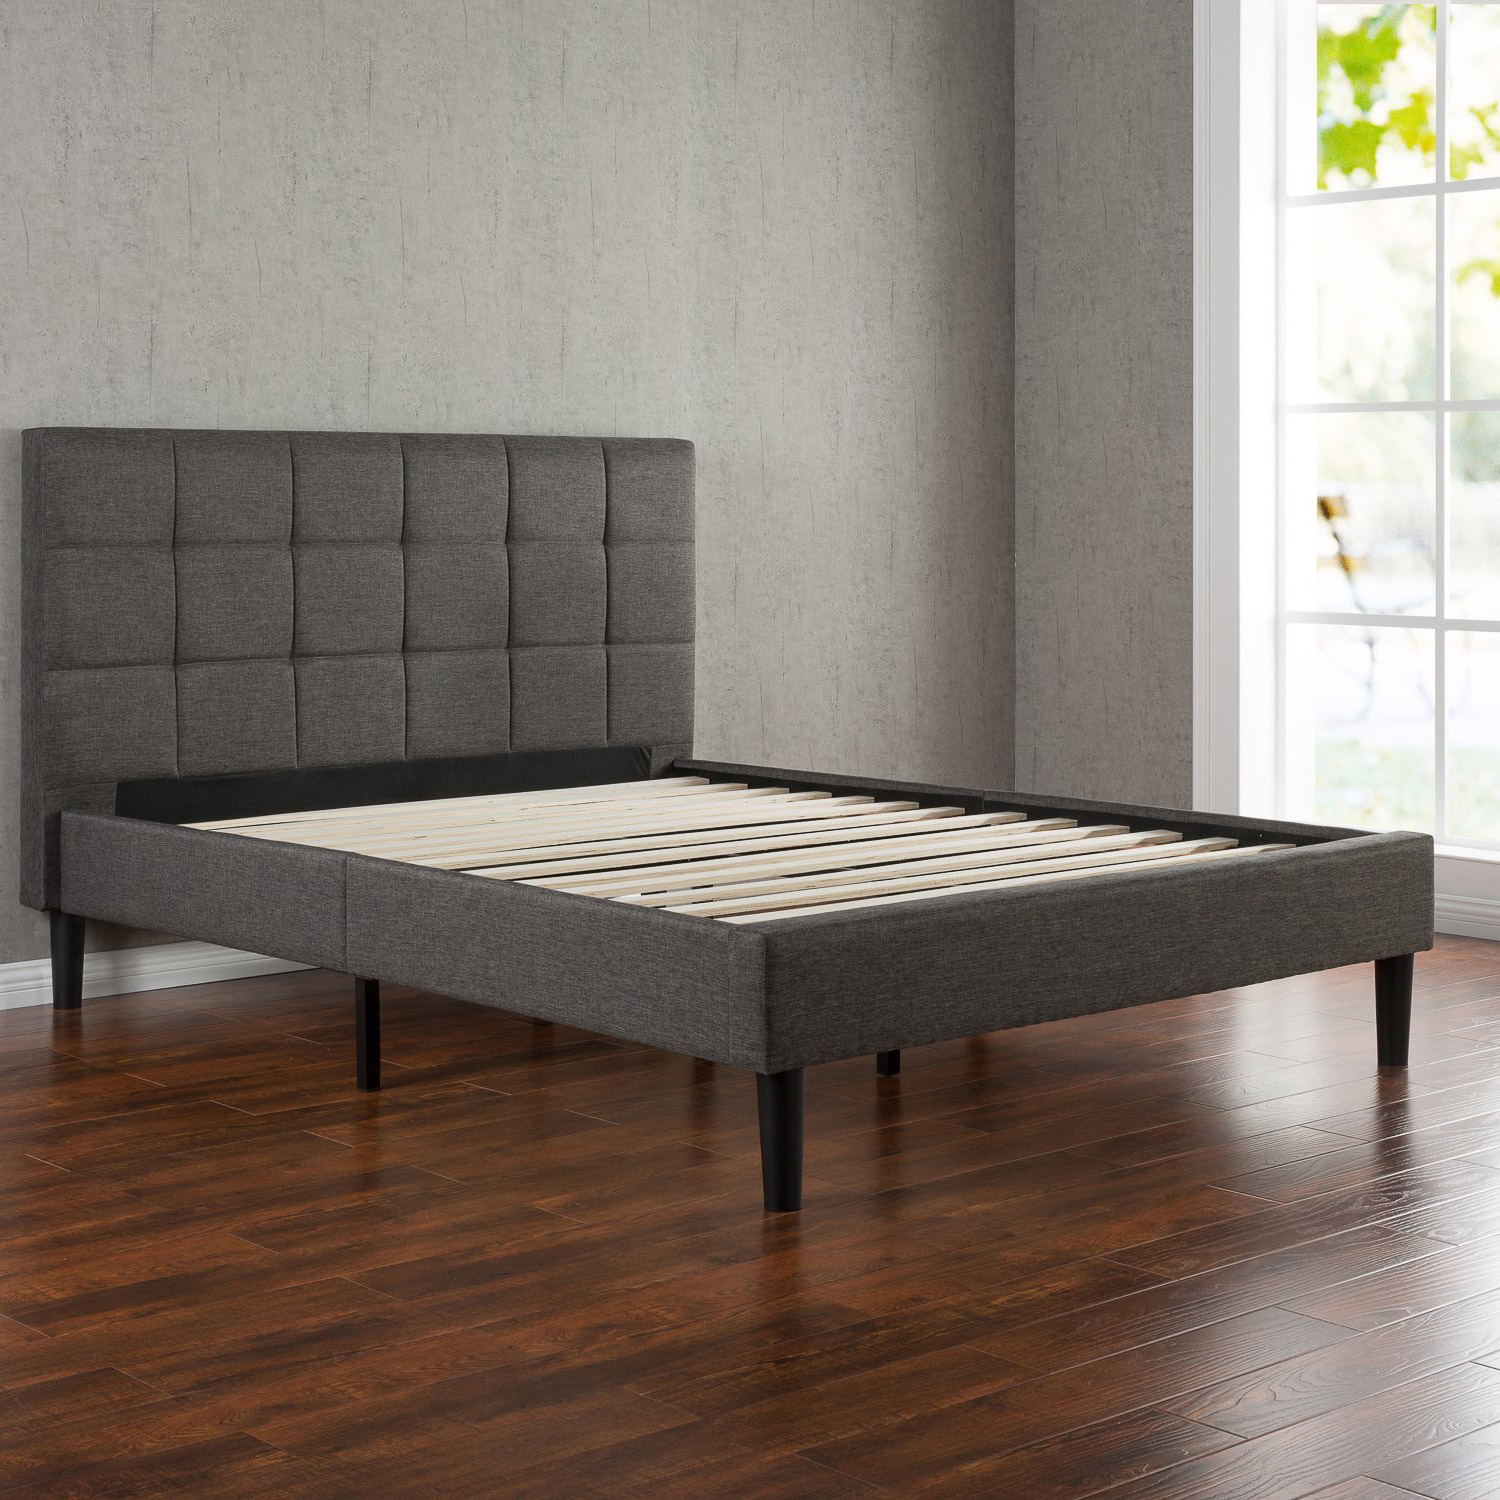 Greenhome123 Grey Upholstered Platform, King Size Platform Bed Frame With Headboard Upholstered Tufted Wooden Slats